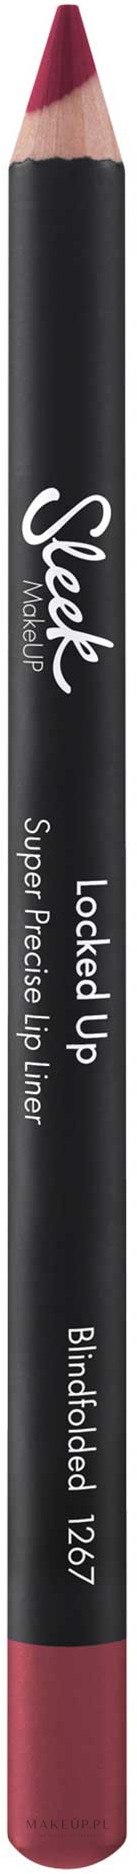 Kredka do ust - Sleek MakeUP Locked Up Super Precise Lip Liner — Zdjęcie Blindfolded